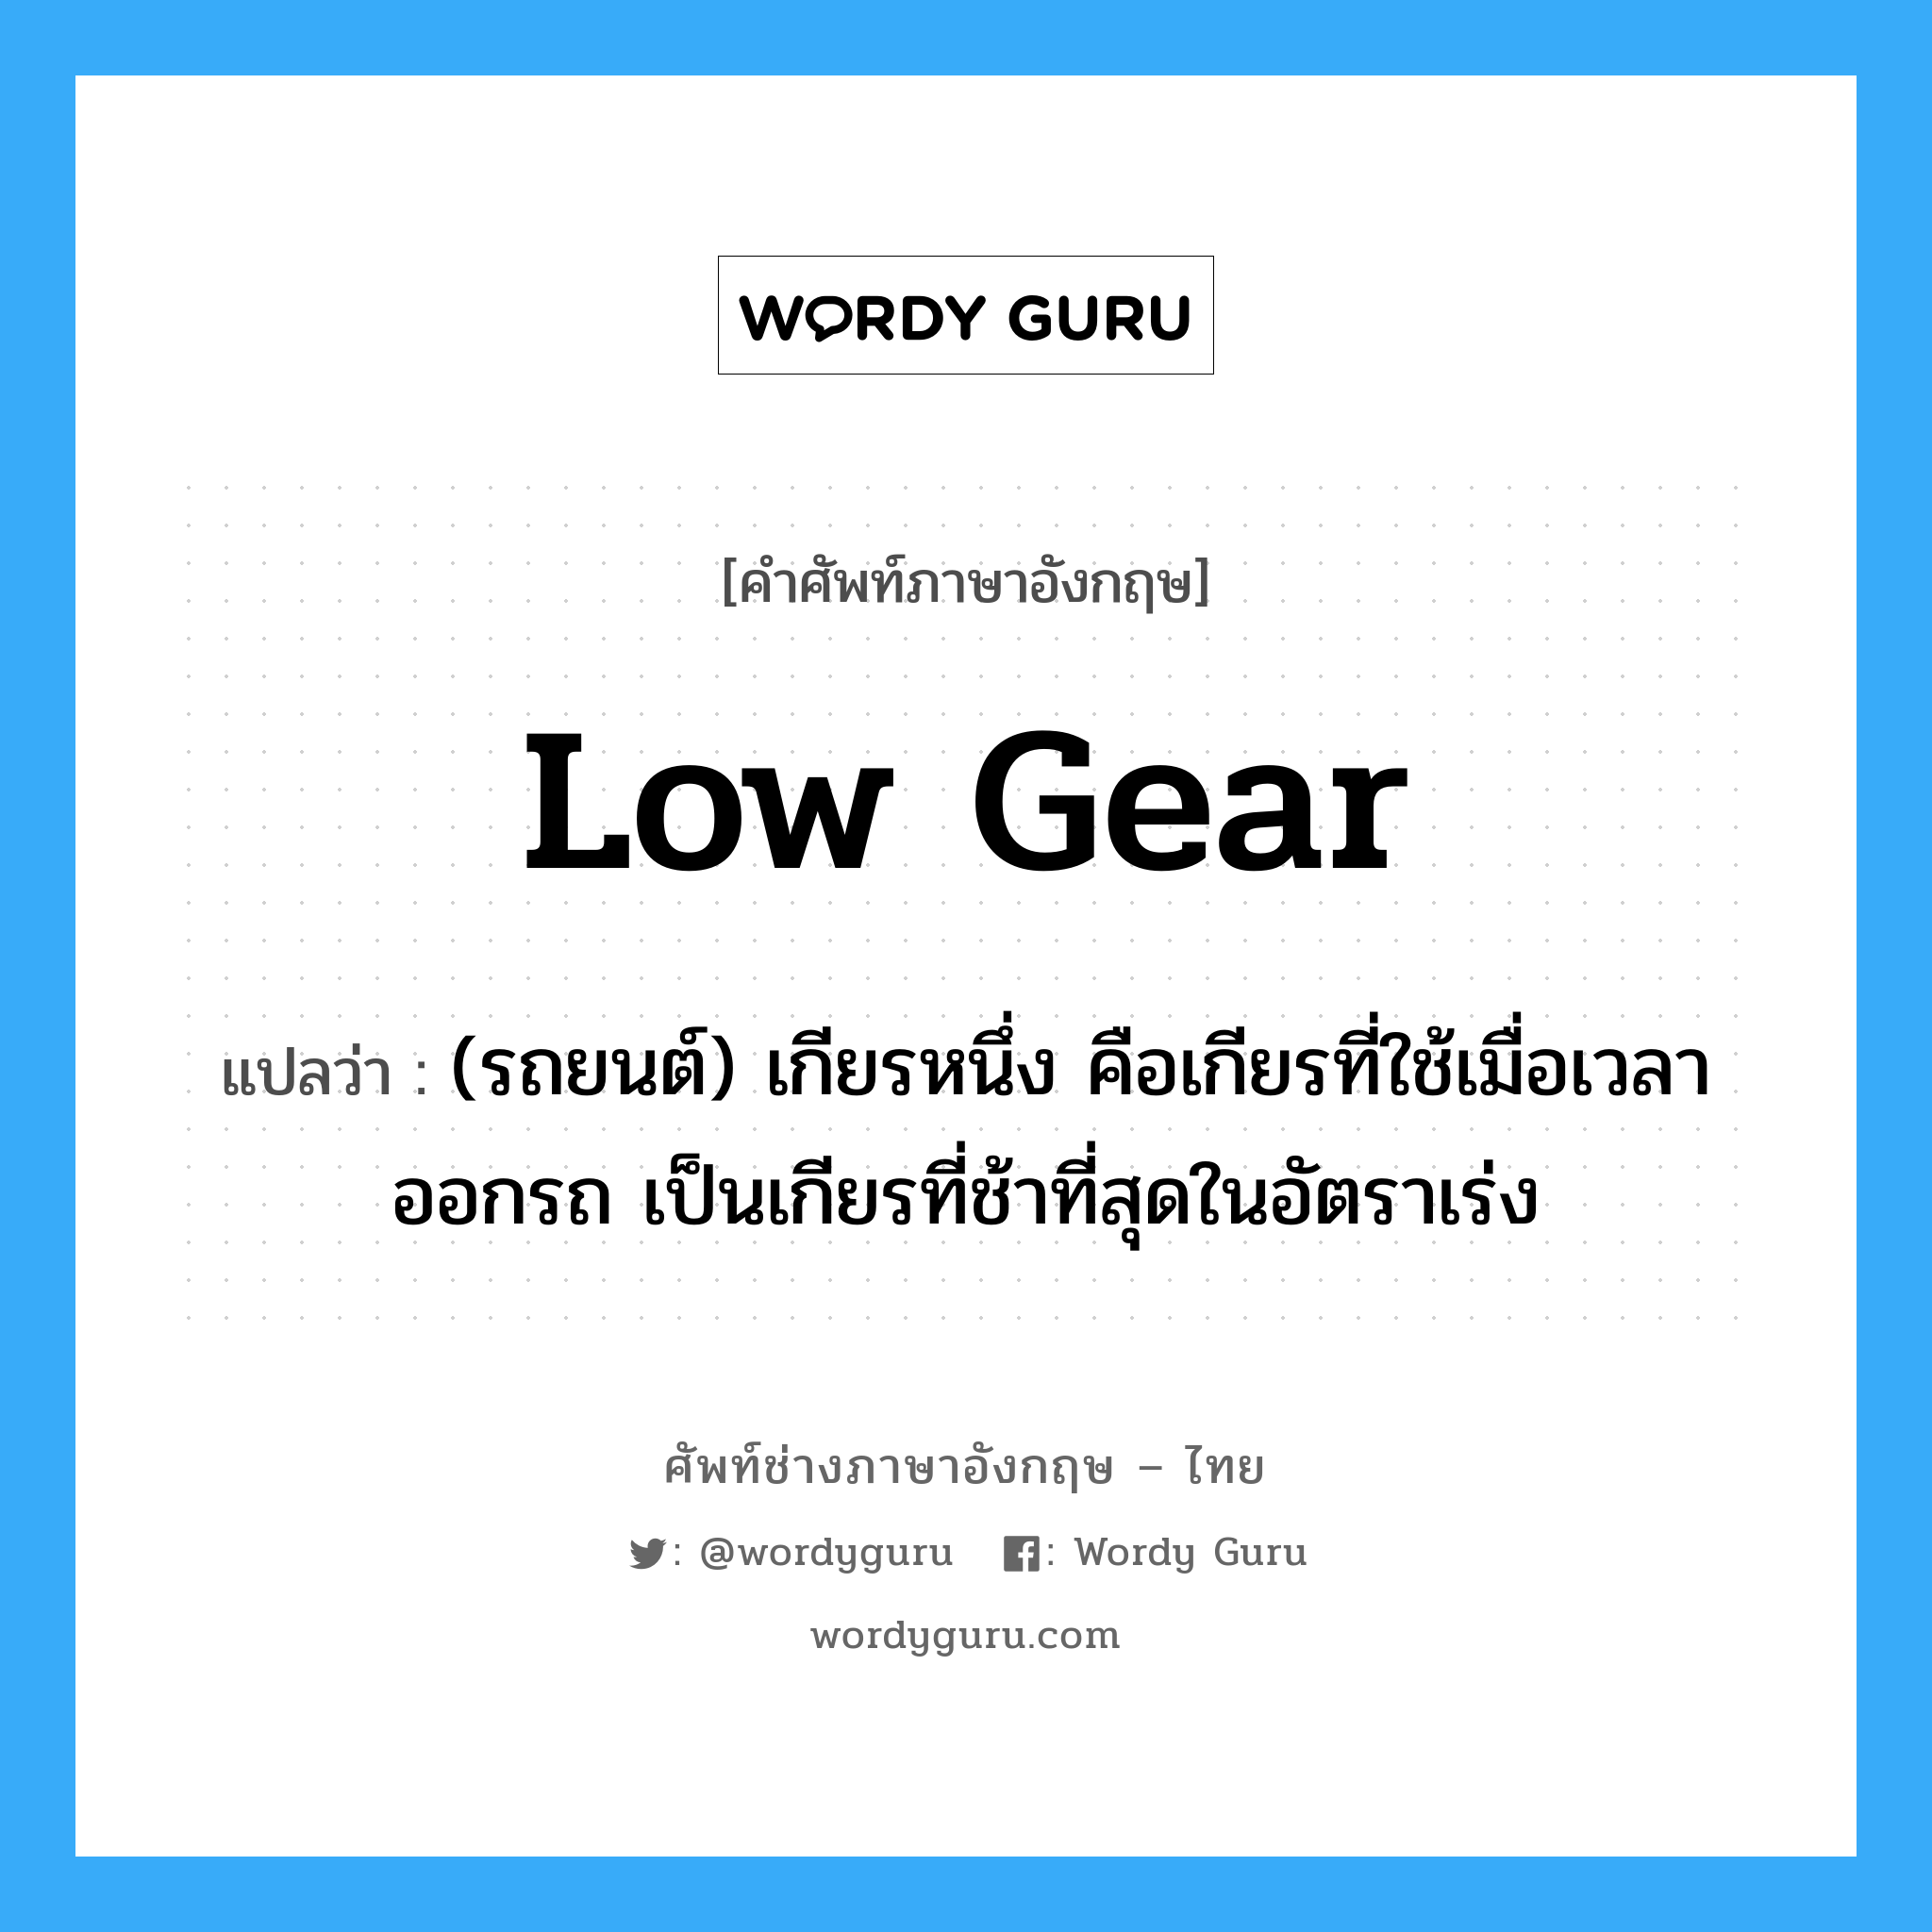 low gear แปลว่า?, คำศัพท์ช่างภาษาอังกฤษ - ไทย low gear คำศัพท์ภาษาอังกฤษ low gear แปลว่า (รถยนต์) เกียรหนึ่ง คือเกียรที่ใช้เมื่อเวลาออกรถ เป็นเกียรที่ช้าที่สุดในอัตราเร่ง